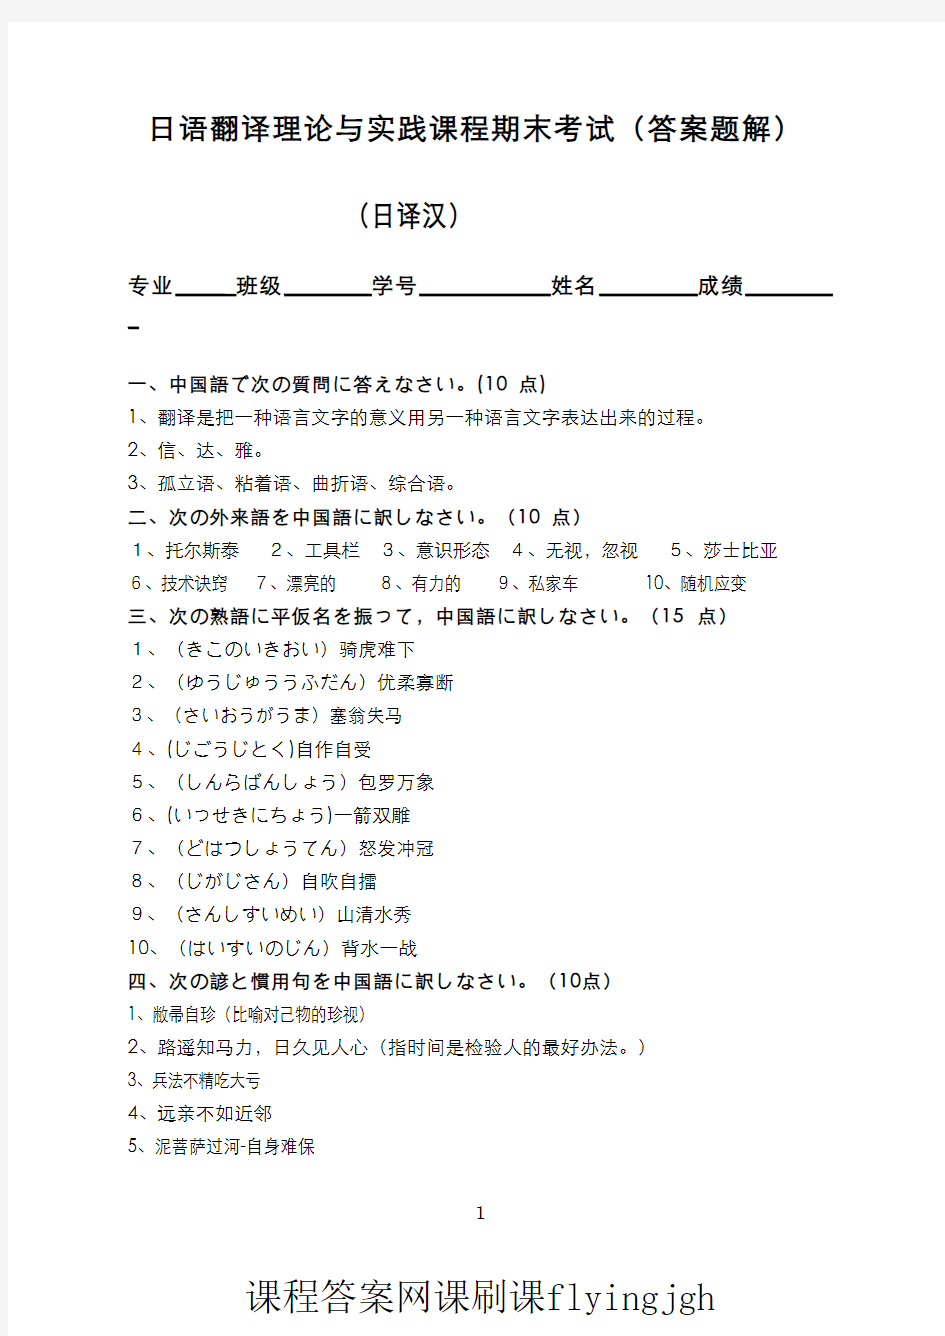 中国大学MOOC慕课爱课程(16)--日语翻译理论与实践日译汉部分期末考试试卷2(答案)网课刷课